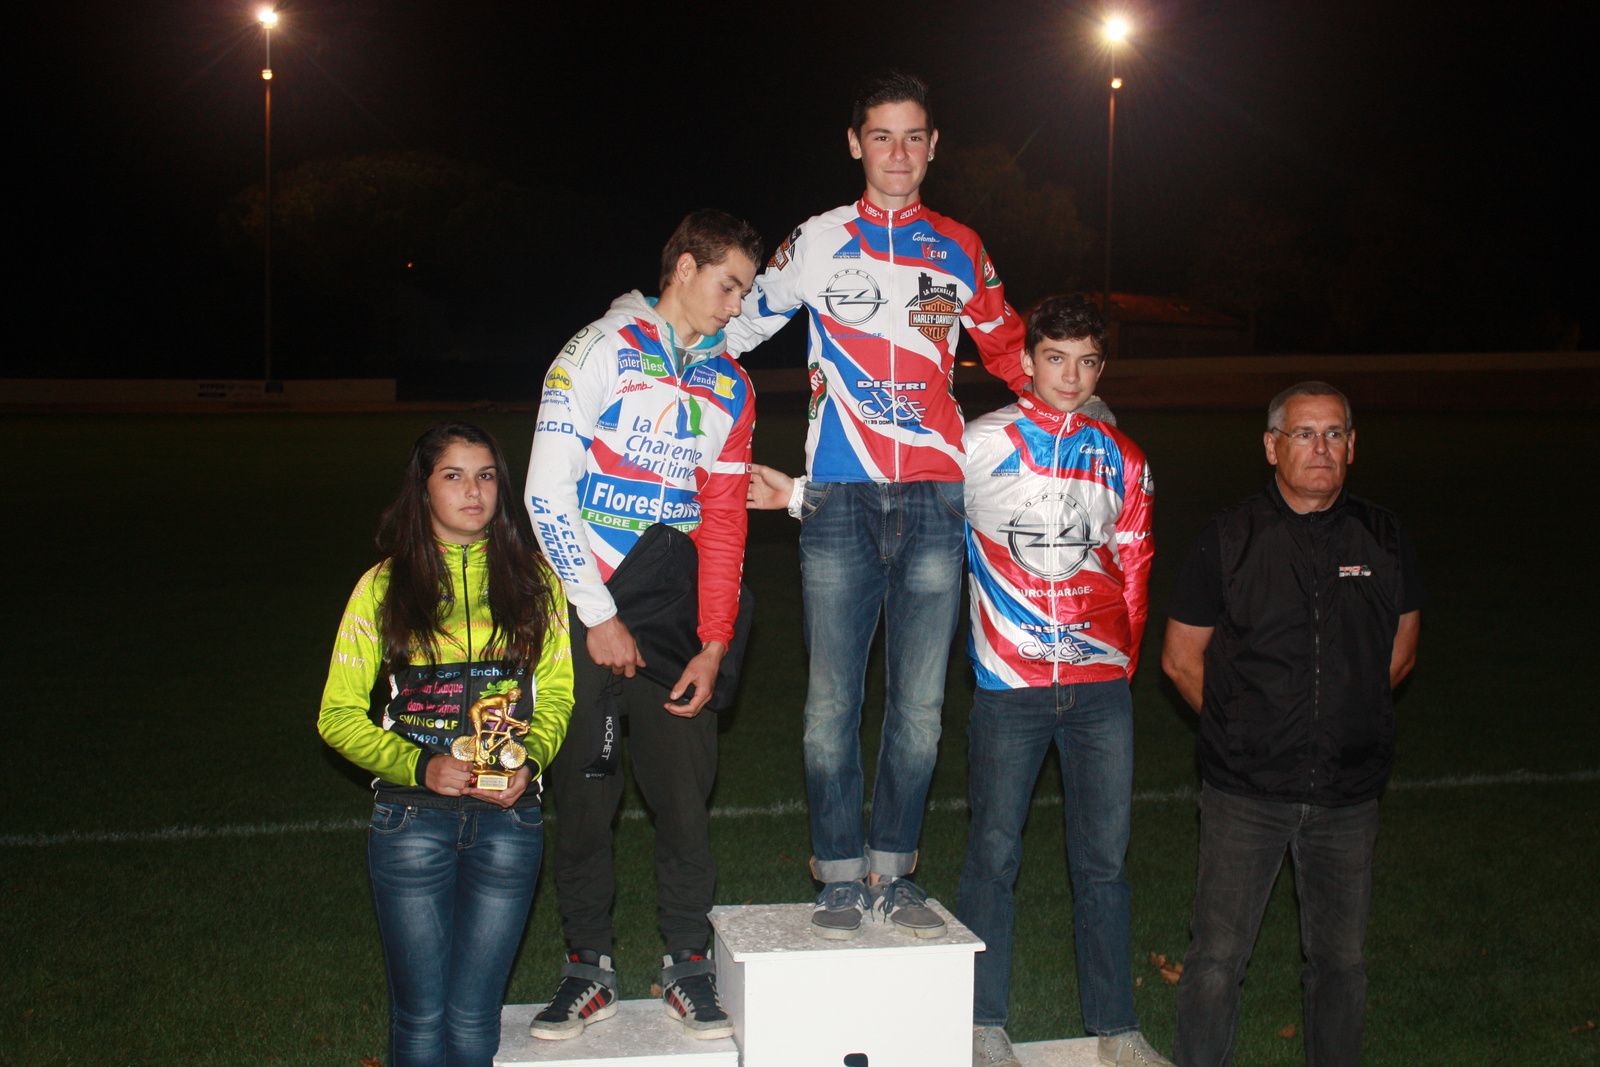 Le  podium  du  Championnat  Départemental  avec  3  rochelais  en  compagnie  de   Bernard  CRON  le  responsable  du  cyclo-cross  en  Charente-Maritime